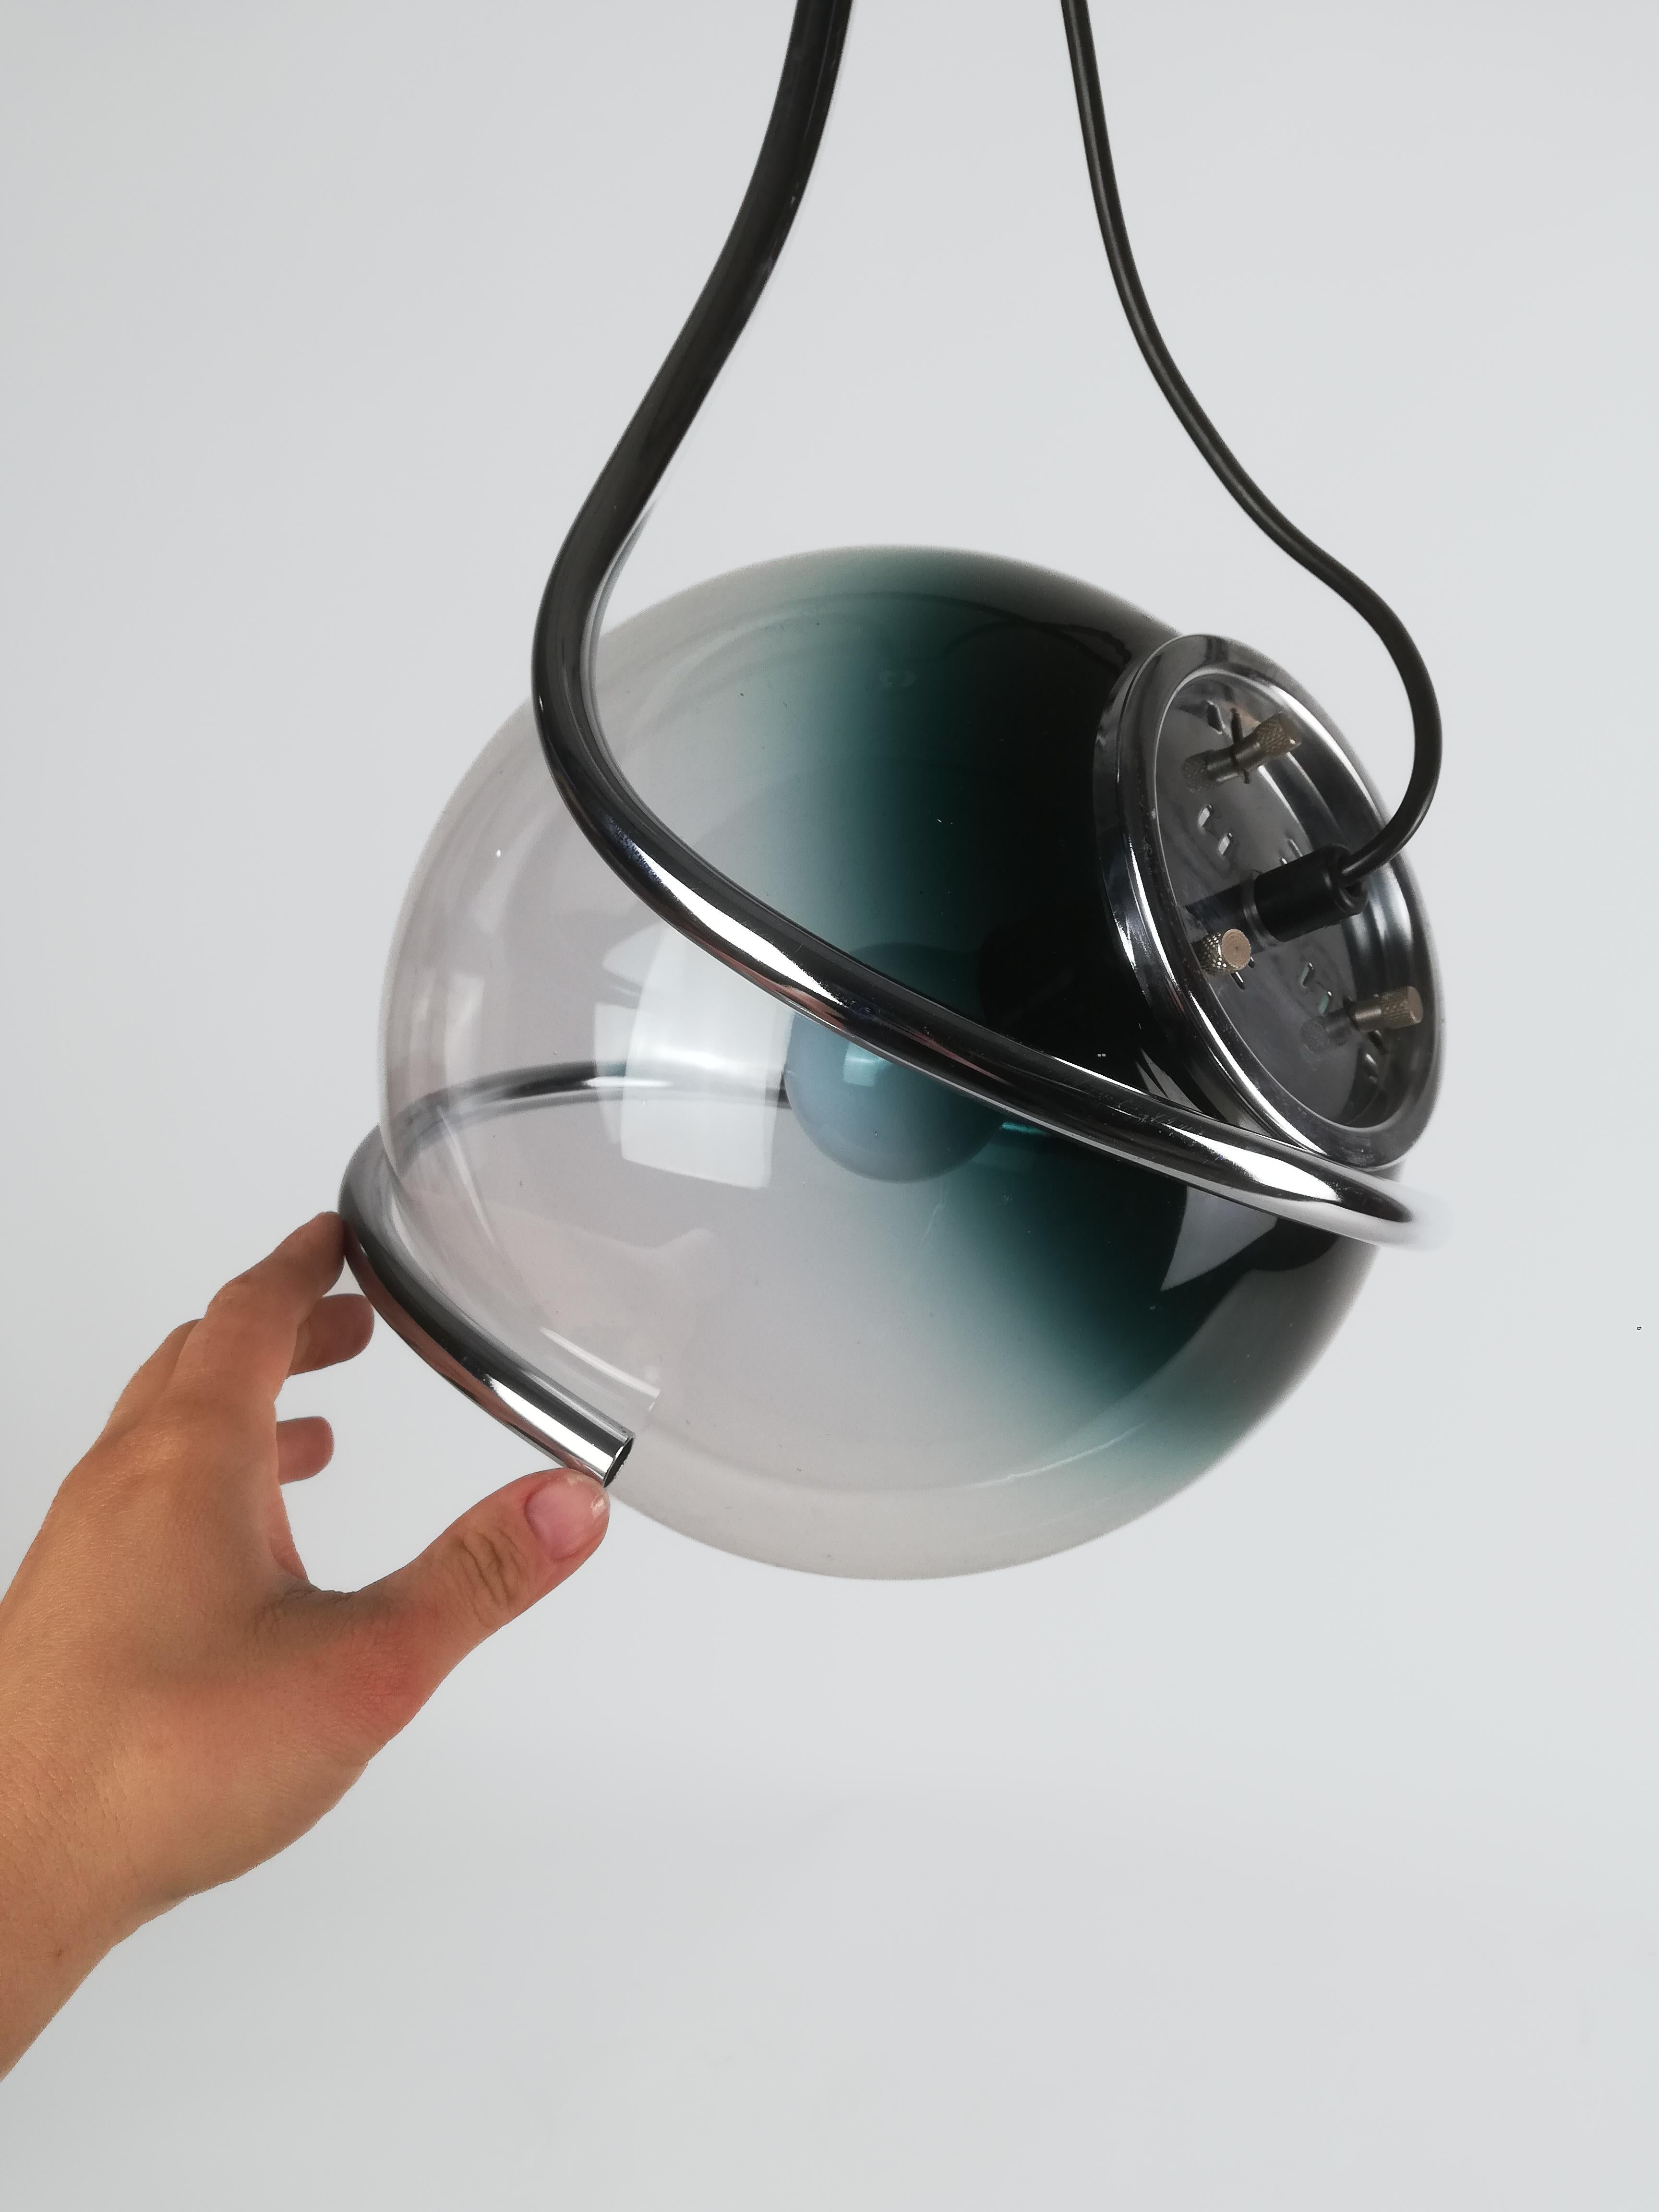 Pendentif Space and Chrome fabriqué en Italie entre les années 1960 et 1970, composé d'une sphère en verre de Murano nuancée de sarcelle à transparente, d'un diamètre de 26 cm, enveloppée et soutenue par un tube en métal chromé qui l'enserre comme